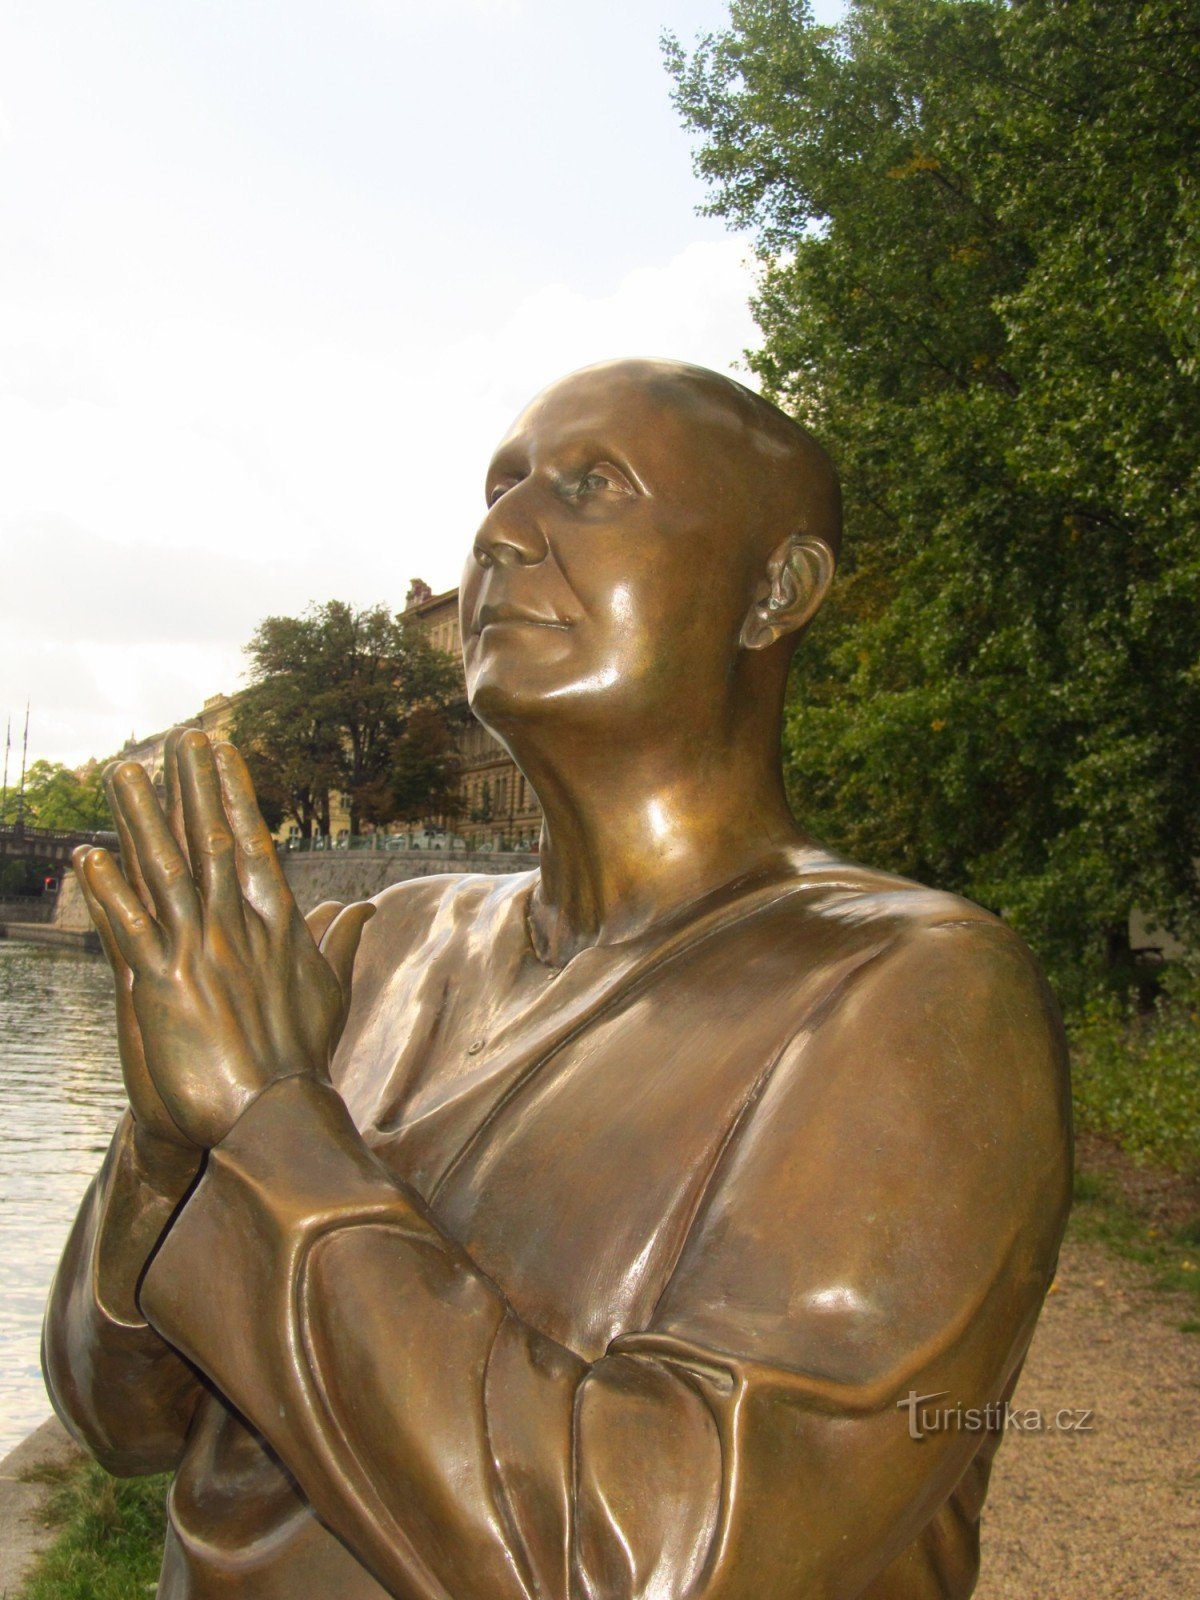 Statuia armoniei din Kampa din Praga